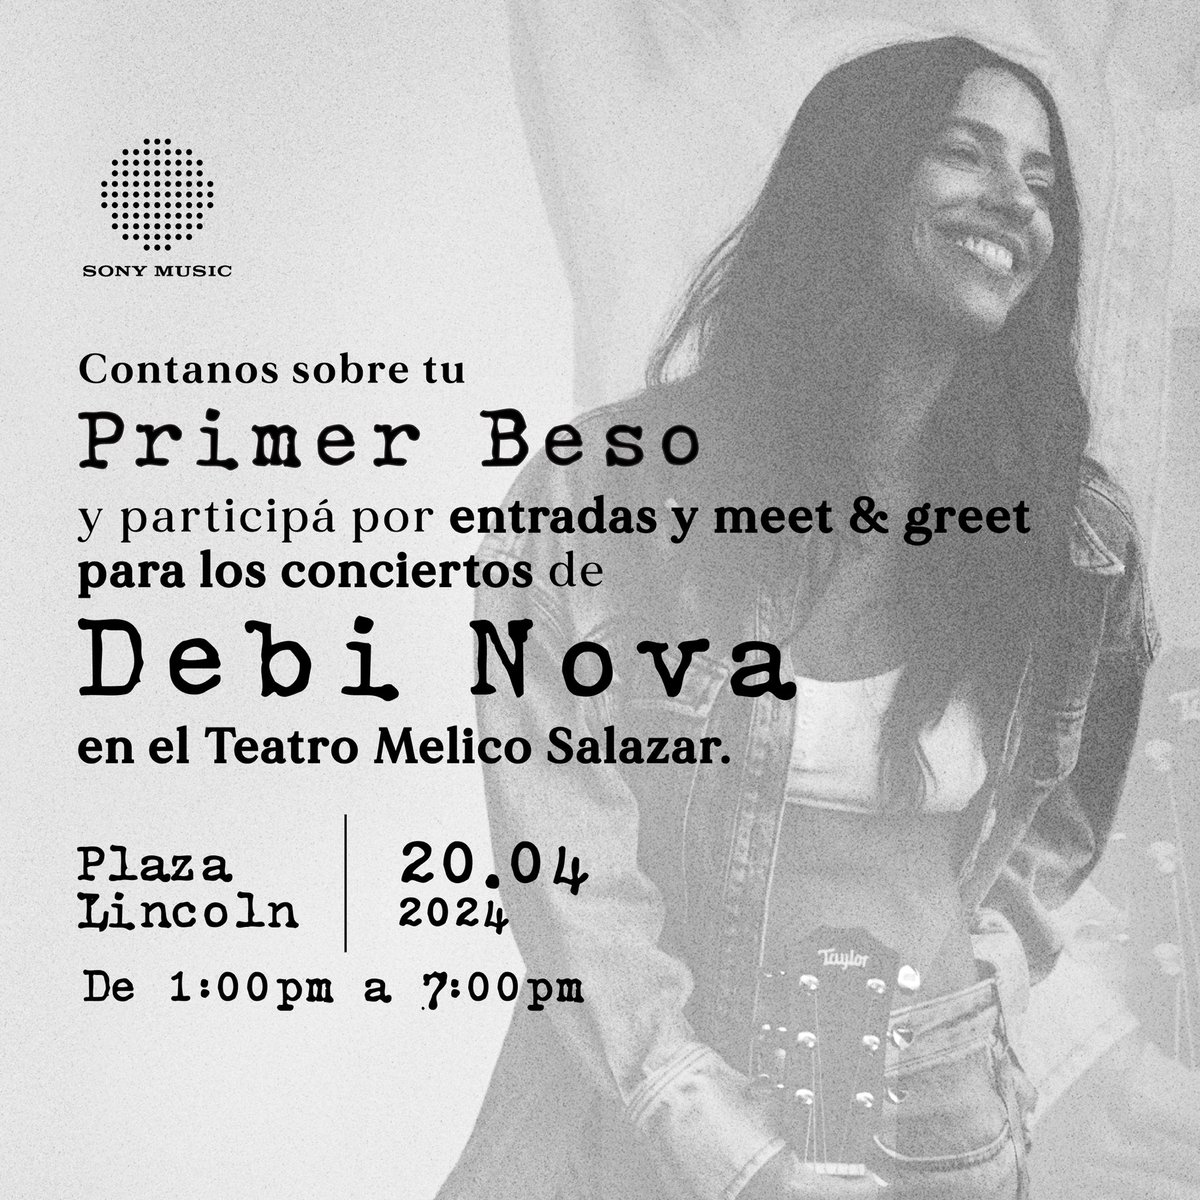 🚨 COSTA RICA 🚨 ¡Vení a Plaza Lincoln este sábado 20 de abril de 1 PM a 7 PM a contarnos sobre tu #PrimerBeso y podrás participar por entradas con meet & greets a los próximos conciertos de @debinova en el Teatro Melico Salazar!